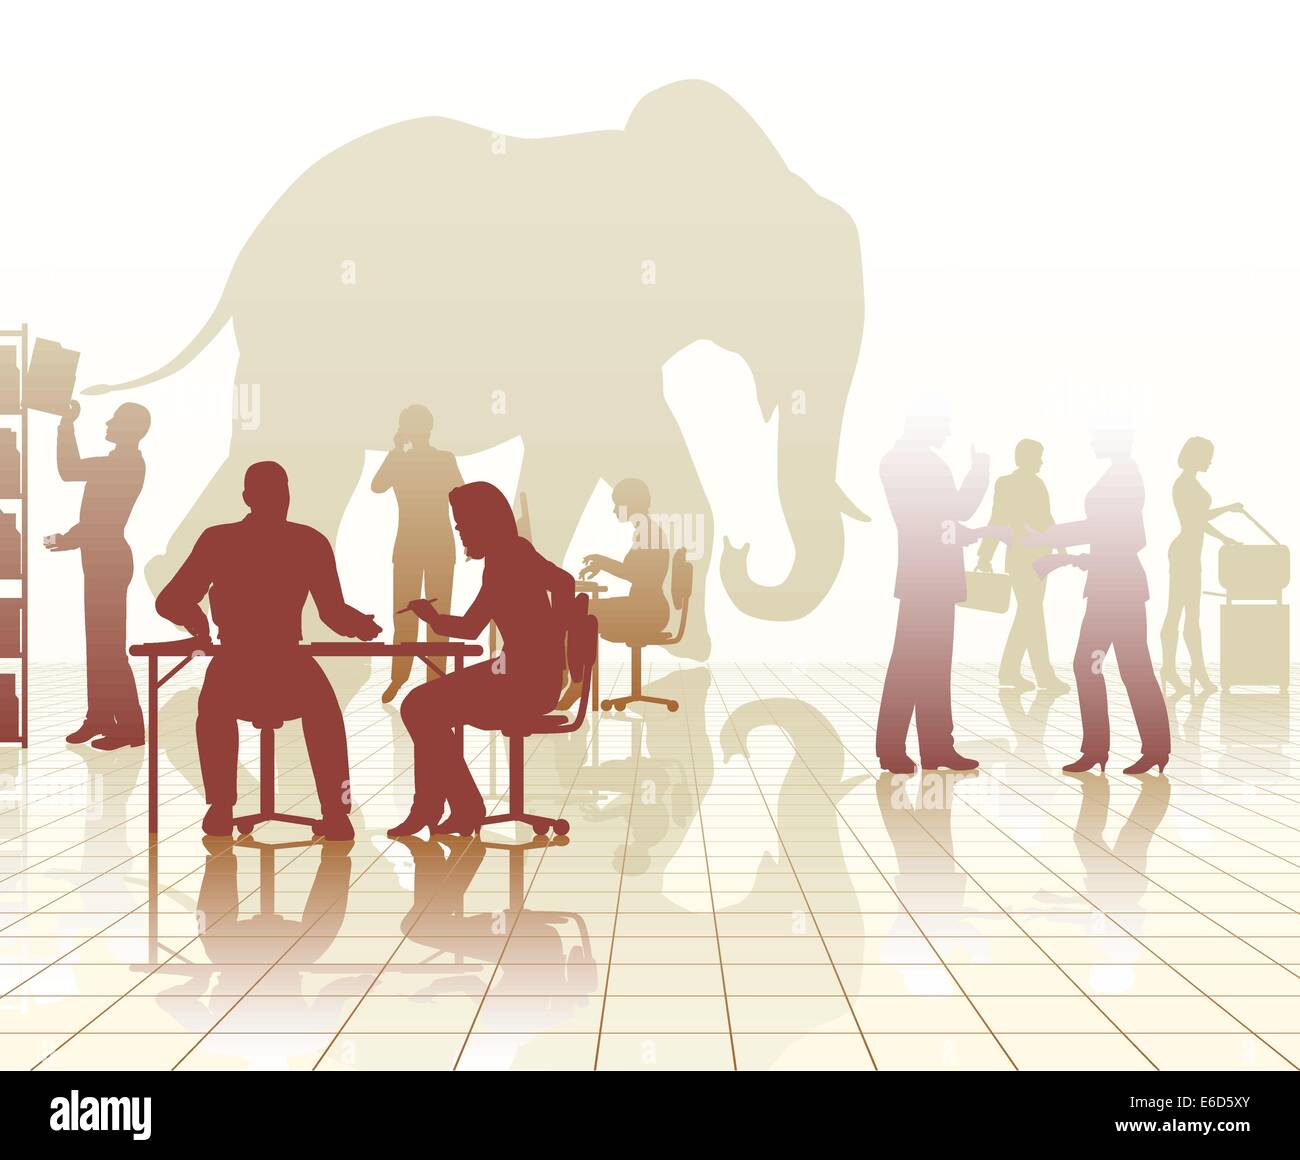 Editierbare Vector Silhouetten eines Elefanten in einem geschäftigen Menschen mit Reflexionen Stock Vektor